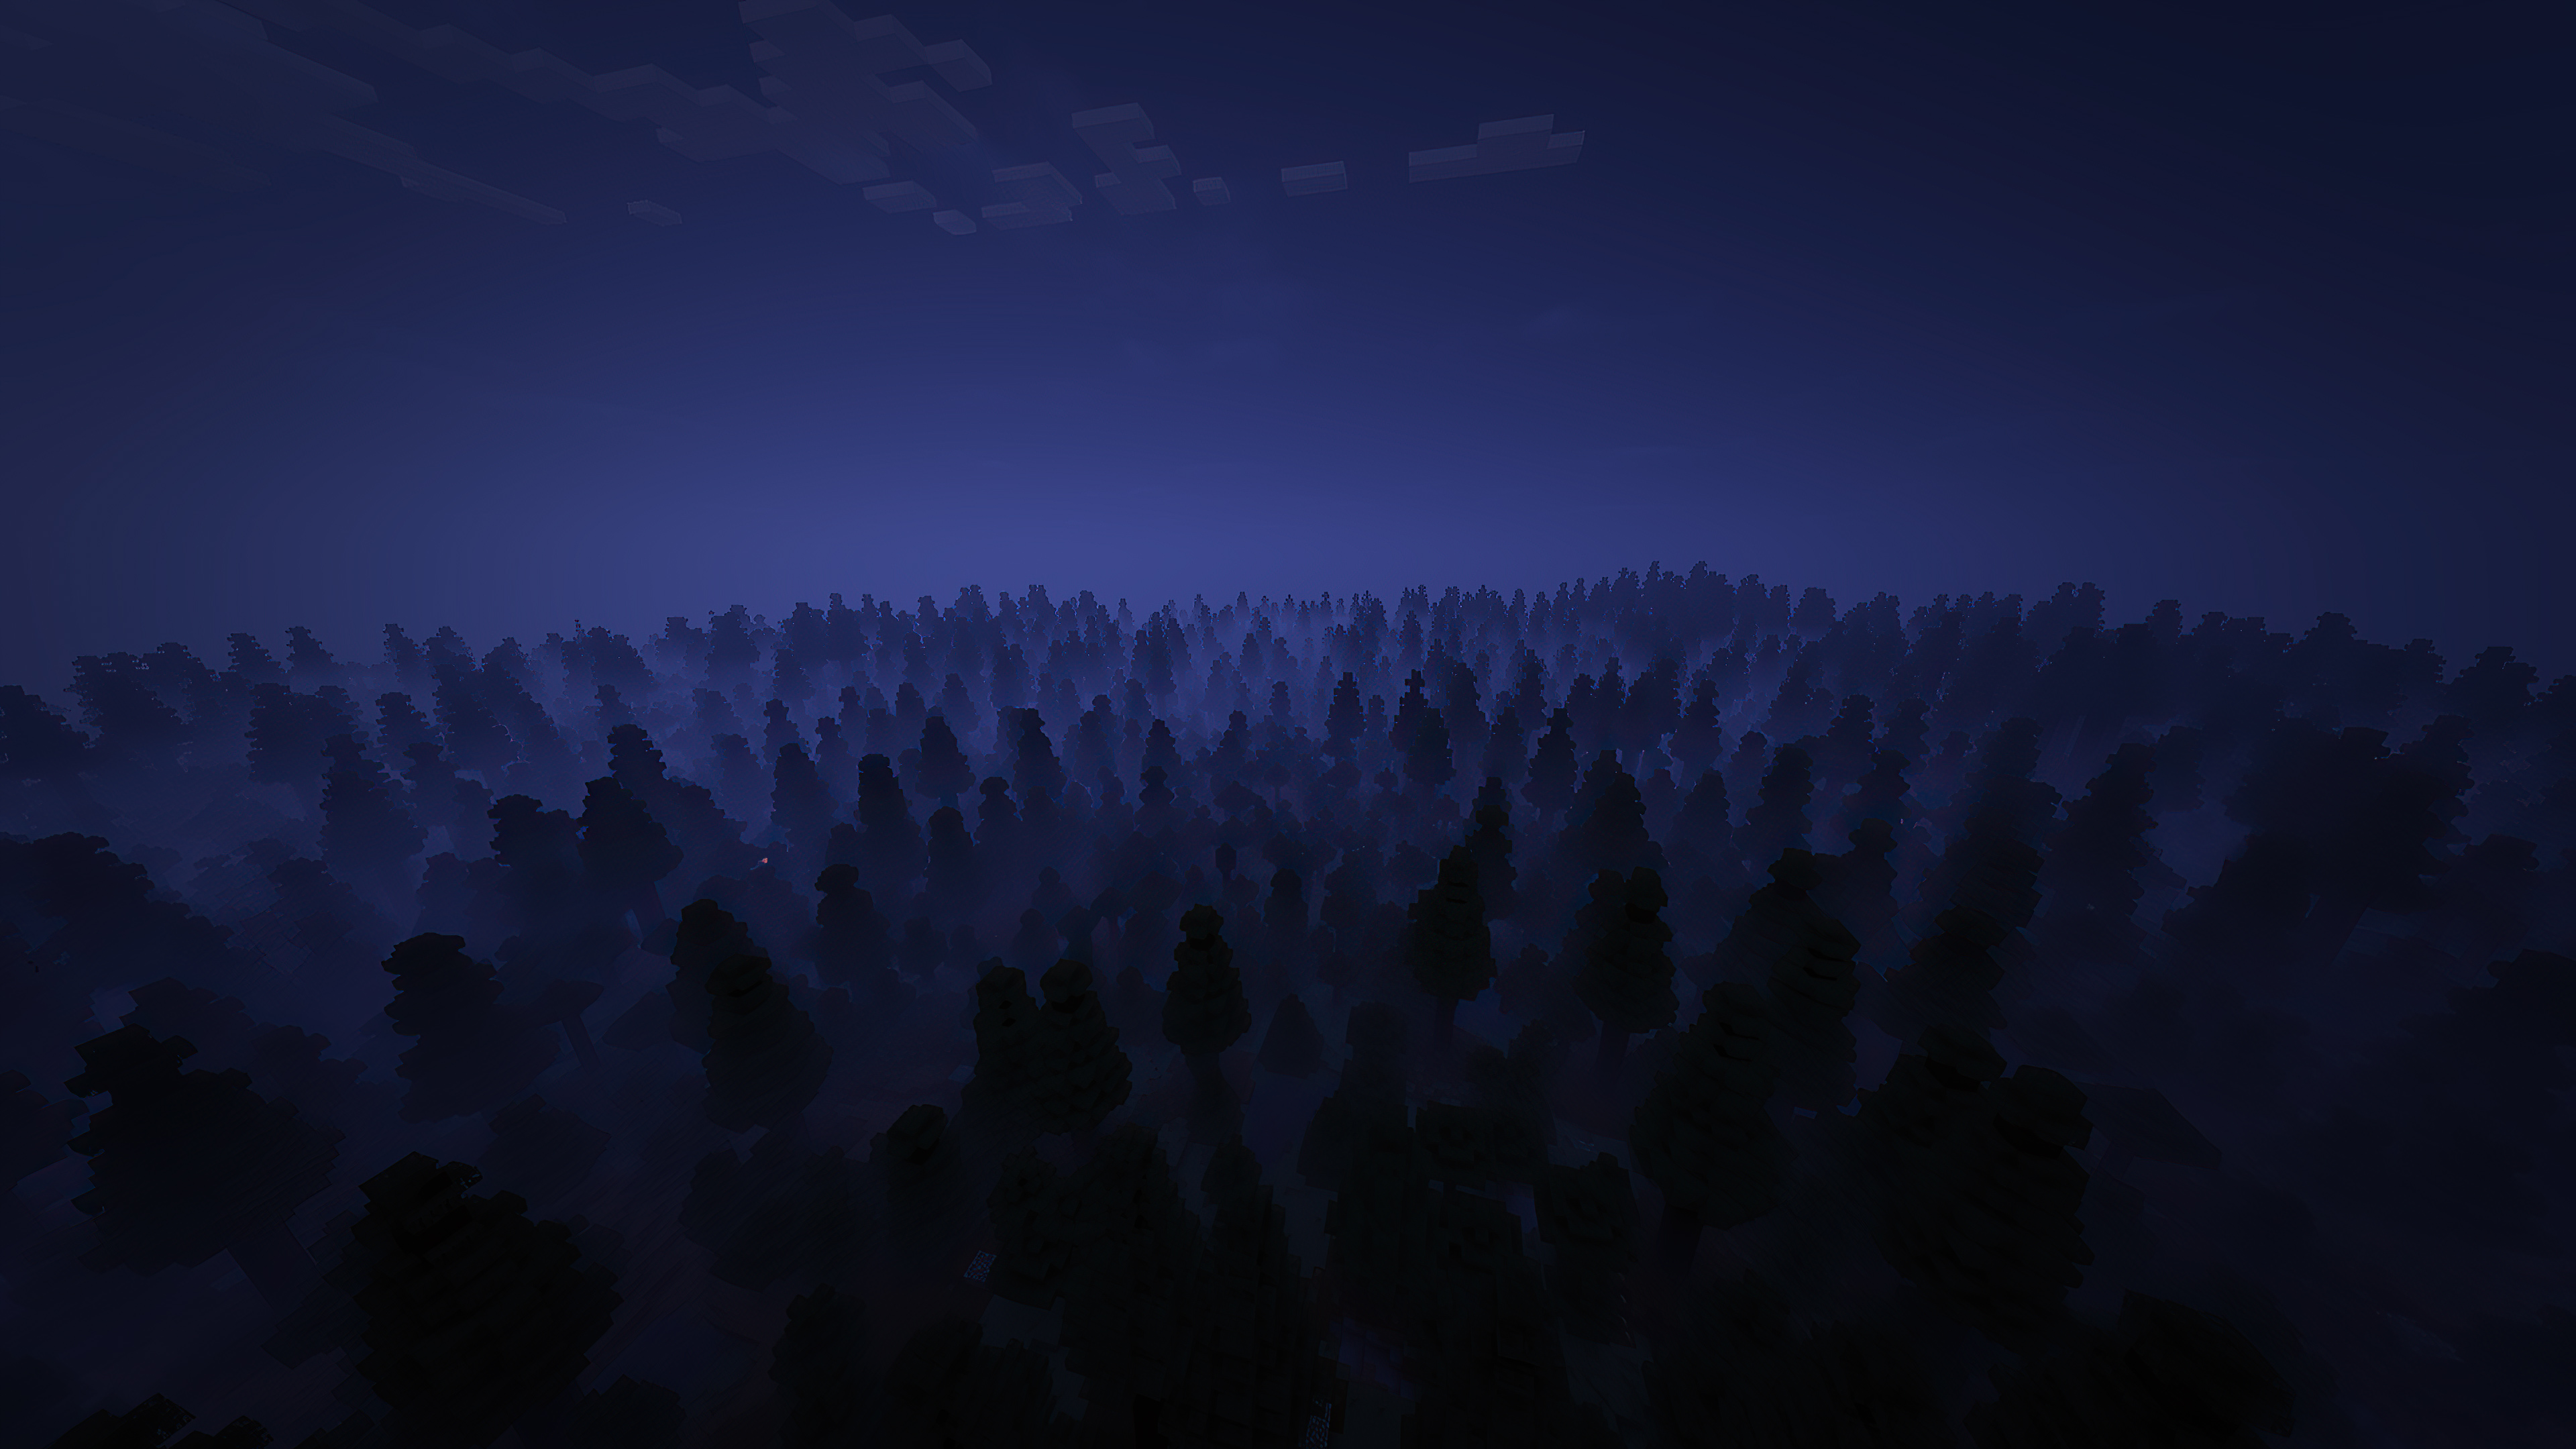 Đêm trong rừng Minecraft còn đầy bí ẩn và hấp dẫn hơn với trò chơi HD và hình nền 4K. Một thế giới game kỳ diệu, đầy màu sắc và đam mê cùng với những hình ảnh tuyệt đẹp. Hãy trải nghiệm ngay để cảm nhận sự thú vị của nó!